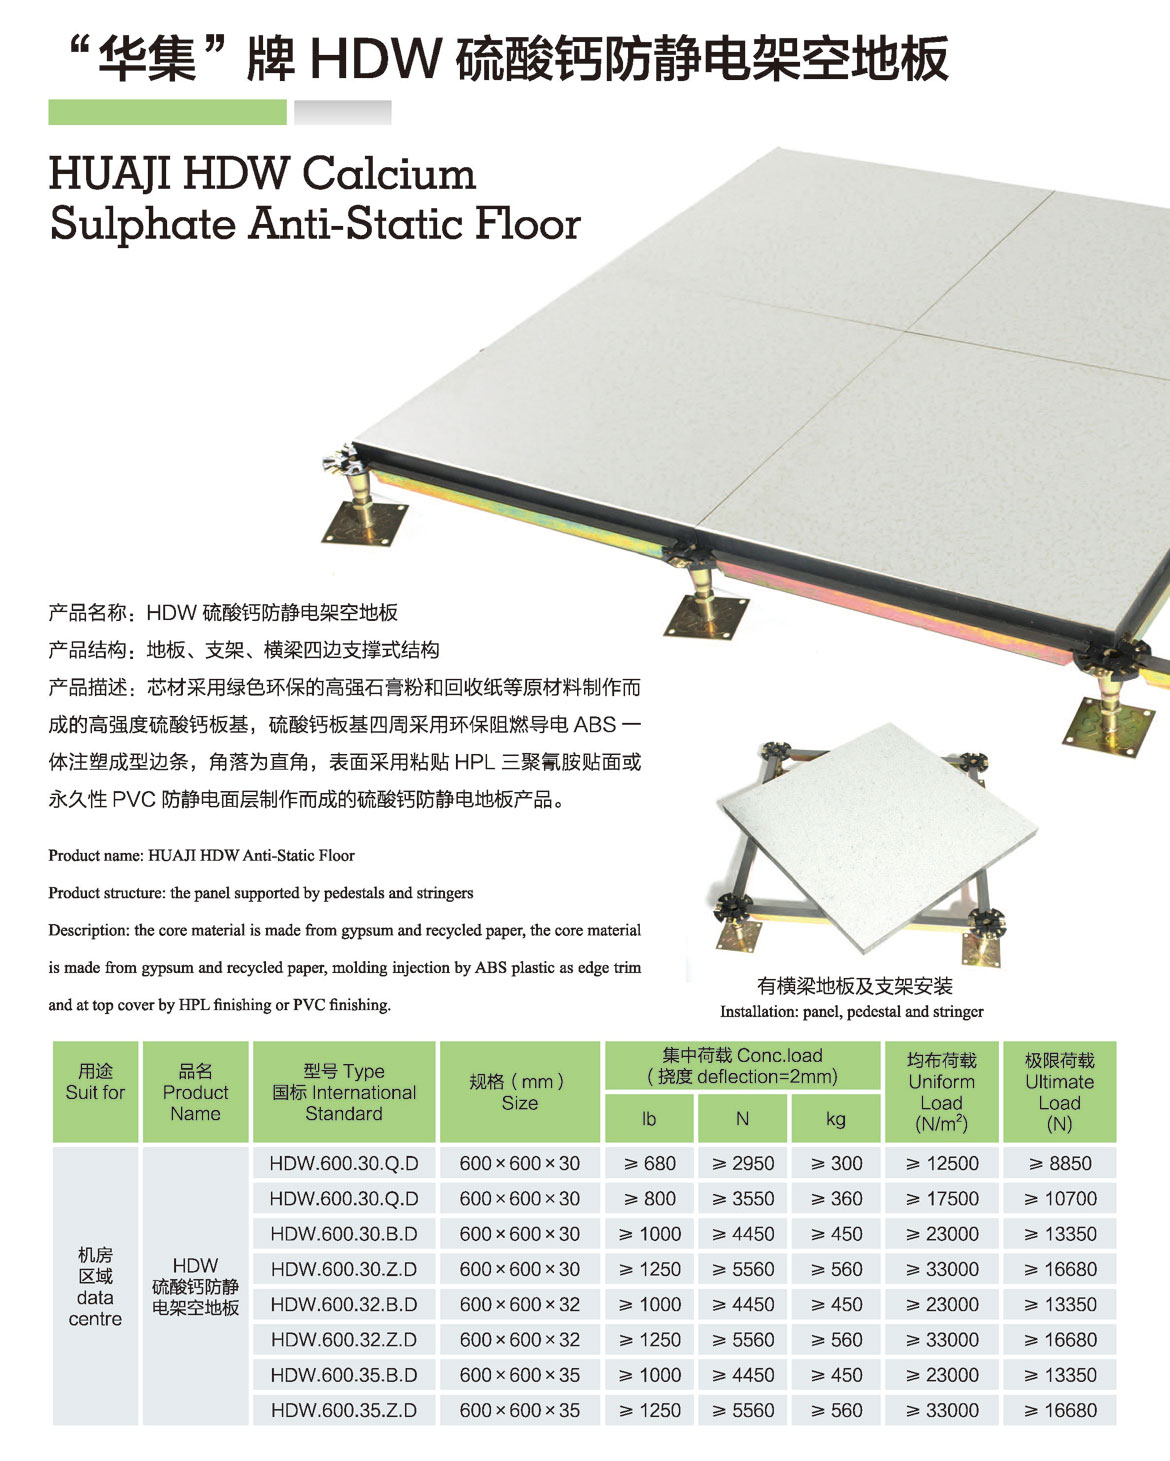 HDW-硫酸钙防静电架空地板-1.jpg